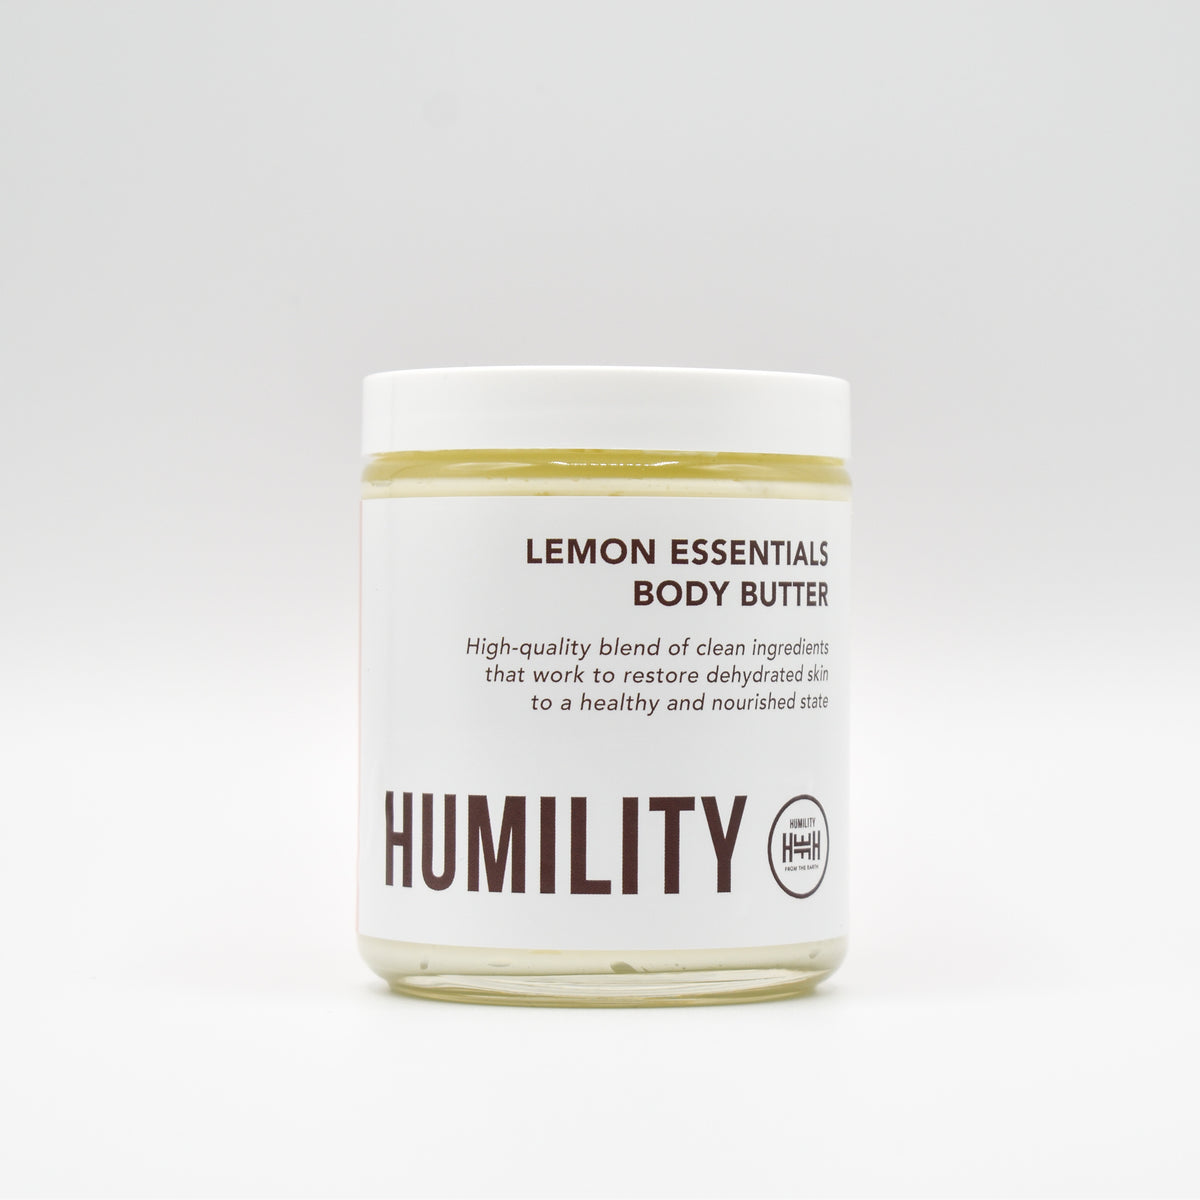 Lemon Essentials Body Butter